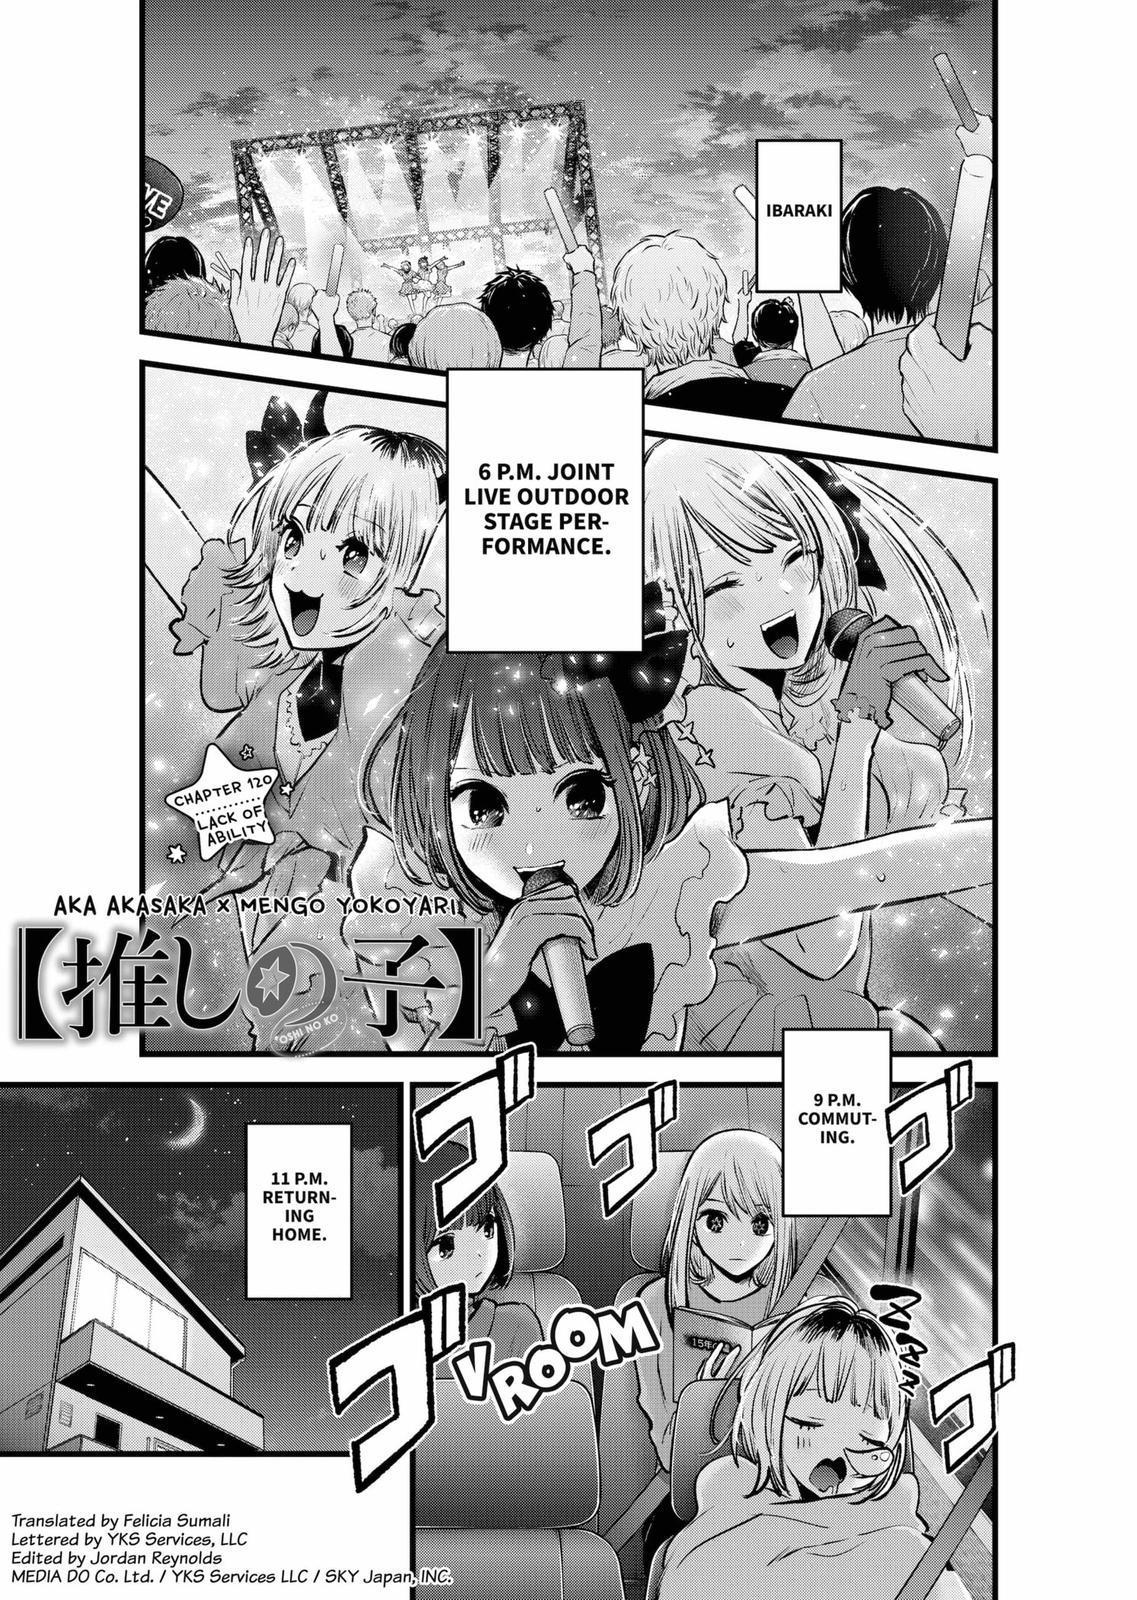 Oshi no ko, Chapter 116 - Oshi no ko Manga Online